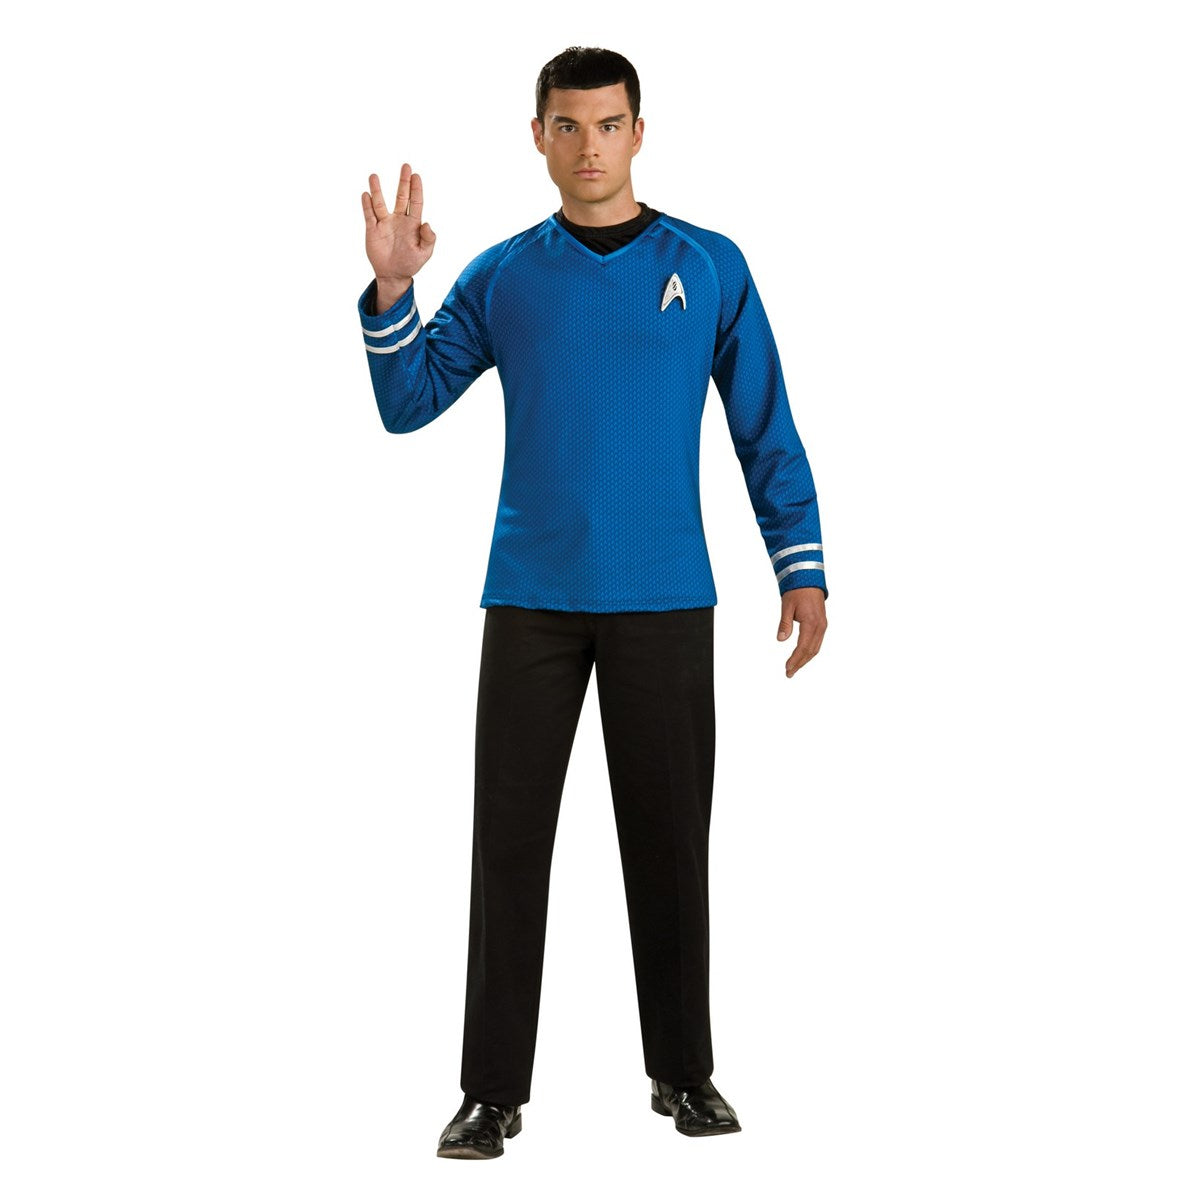 Rubies Costumes 284413 Halloween Star Trek Mens Grand Heritage Spock C